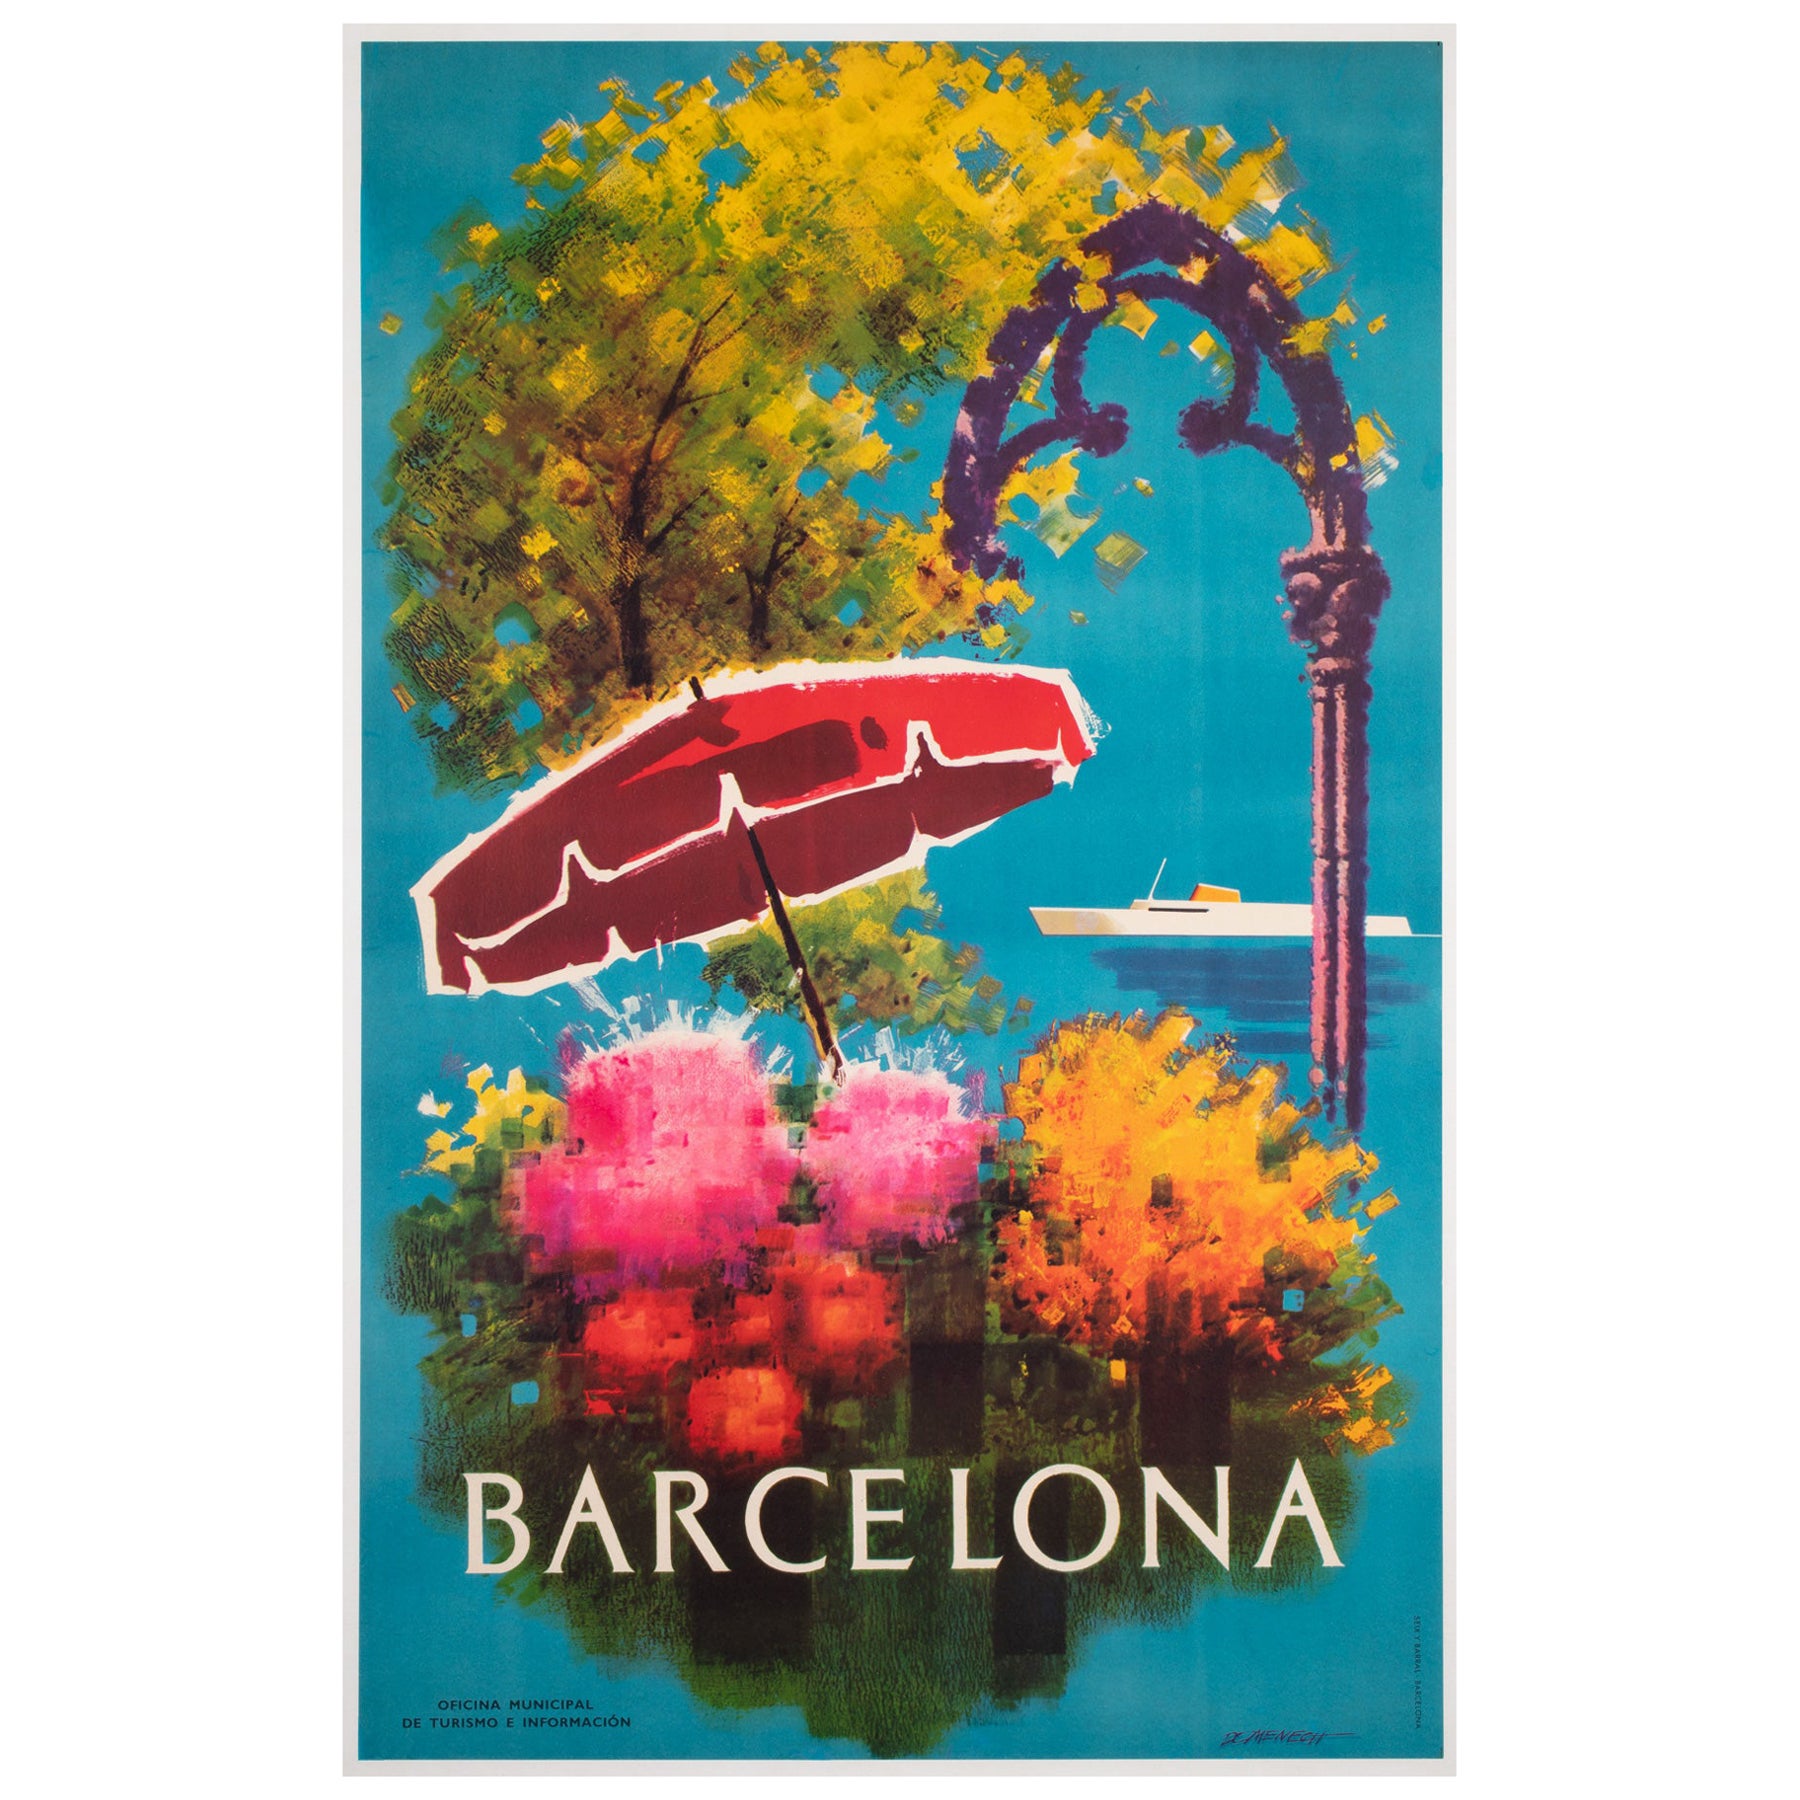 Barcelona 1950s Spanish Travel Advertising Poster, Flowers, Ship For Sale